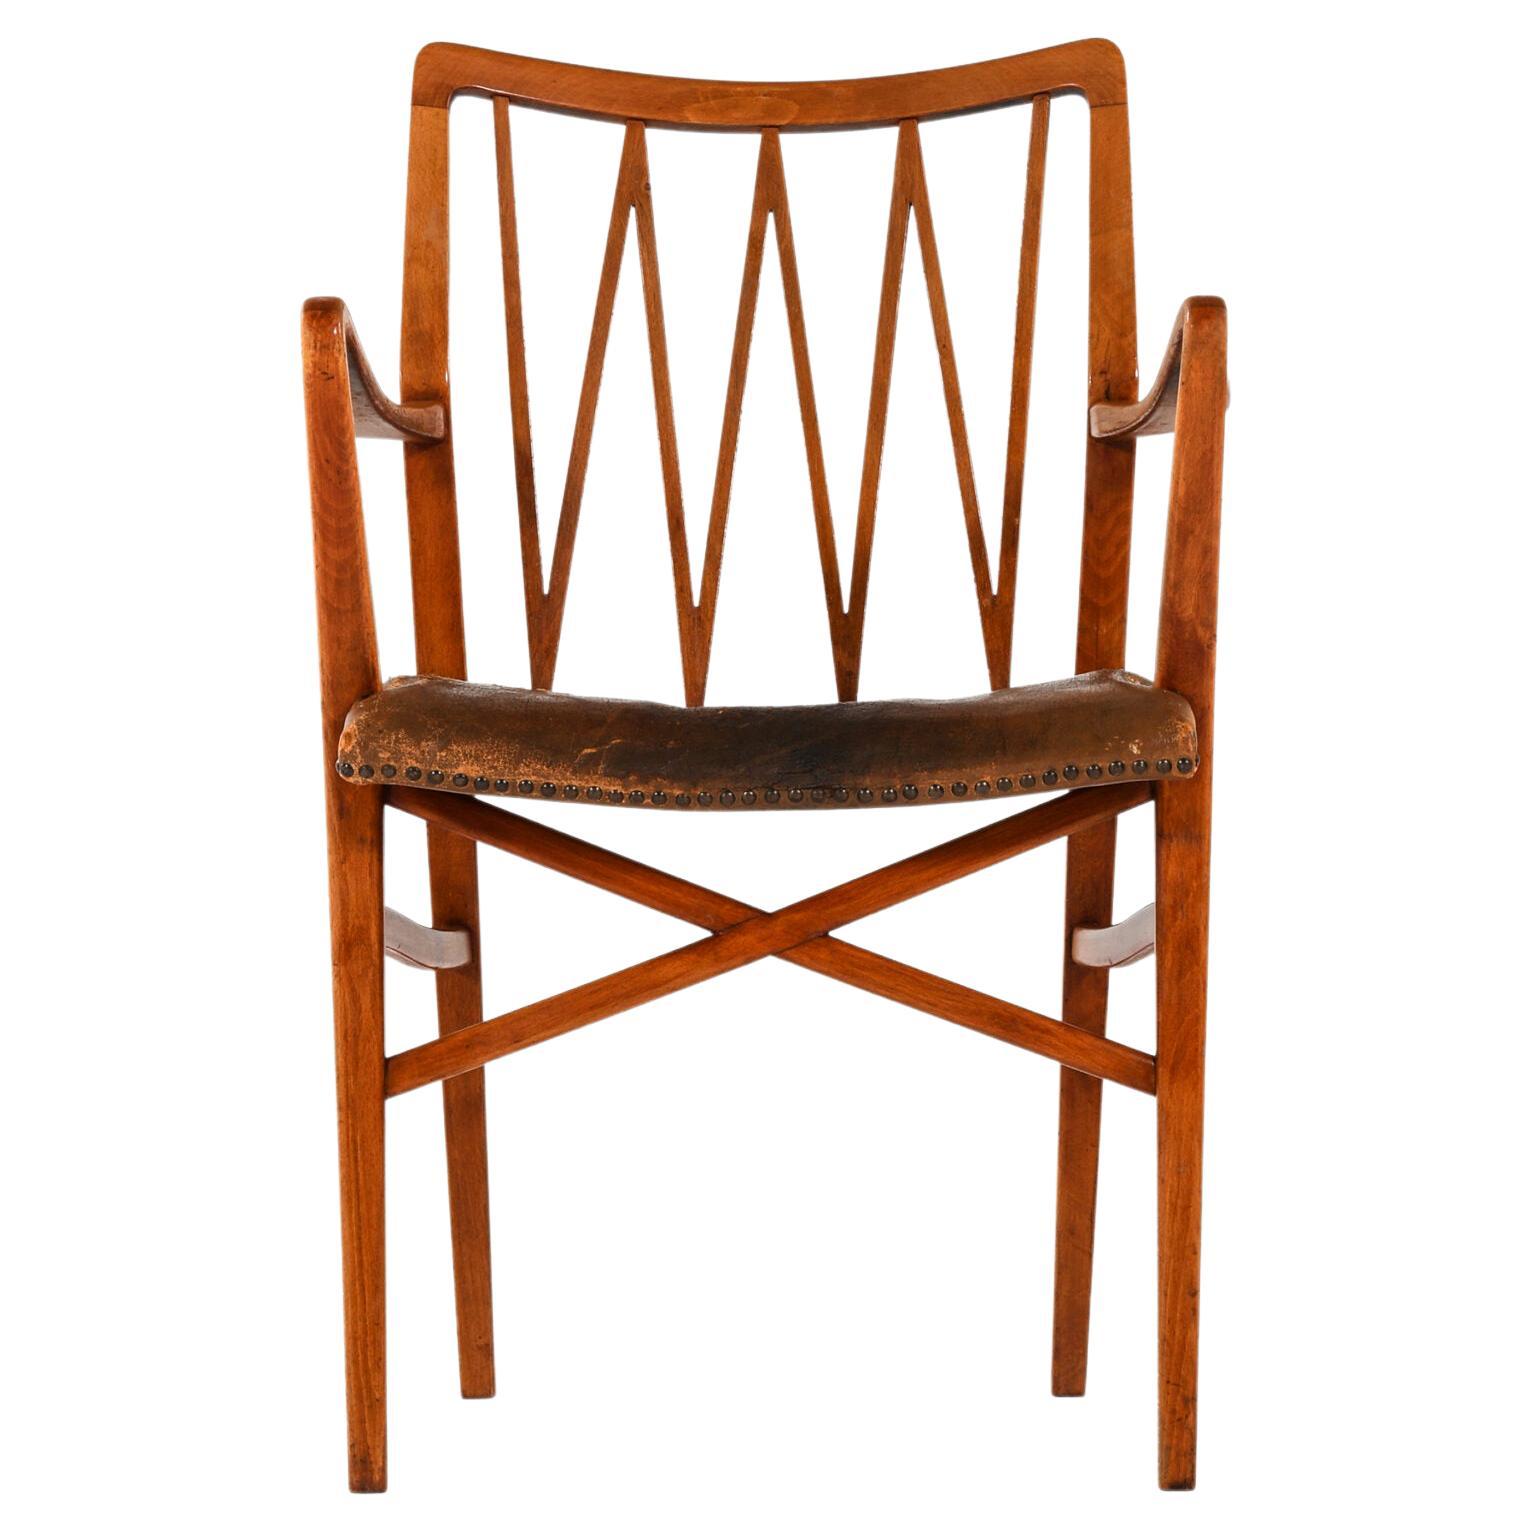 Sessel in der Art von Axel Larsson, hergestellt in Schweden